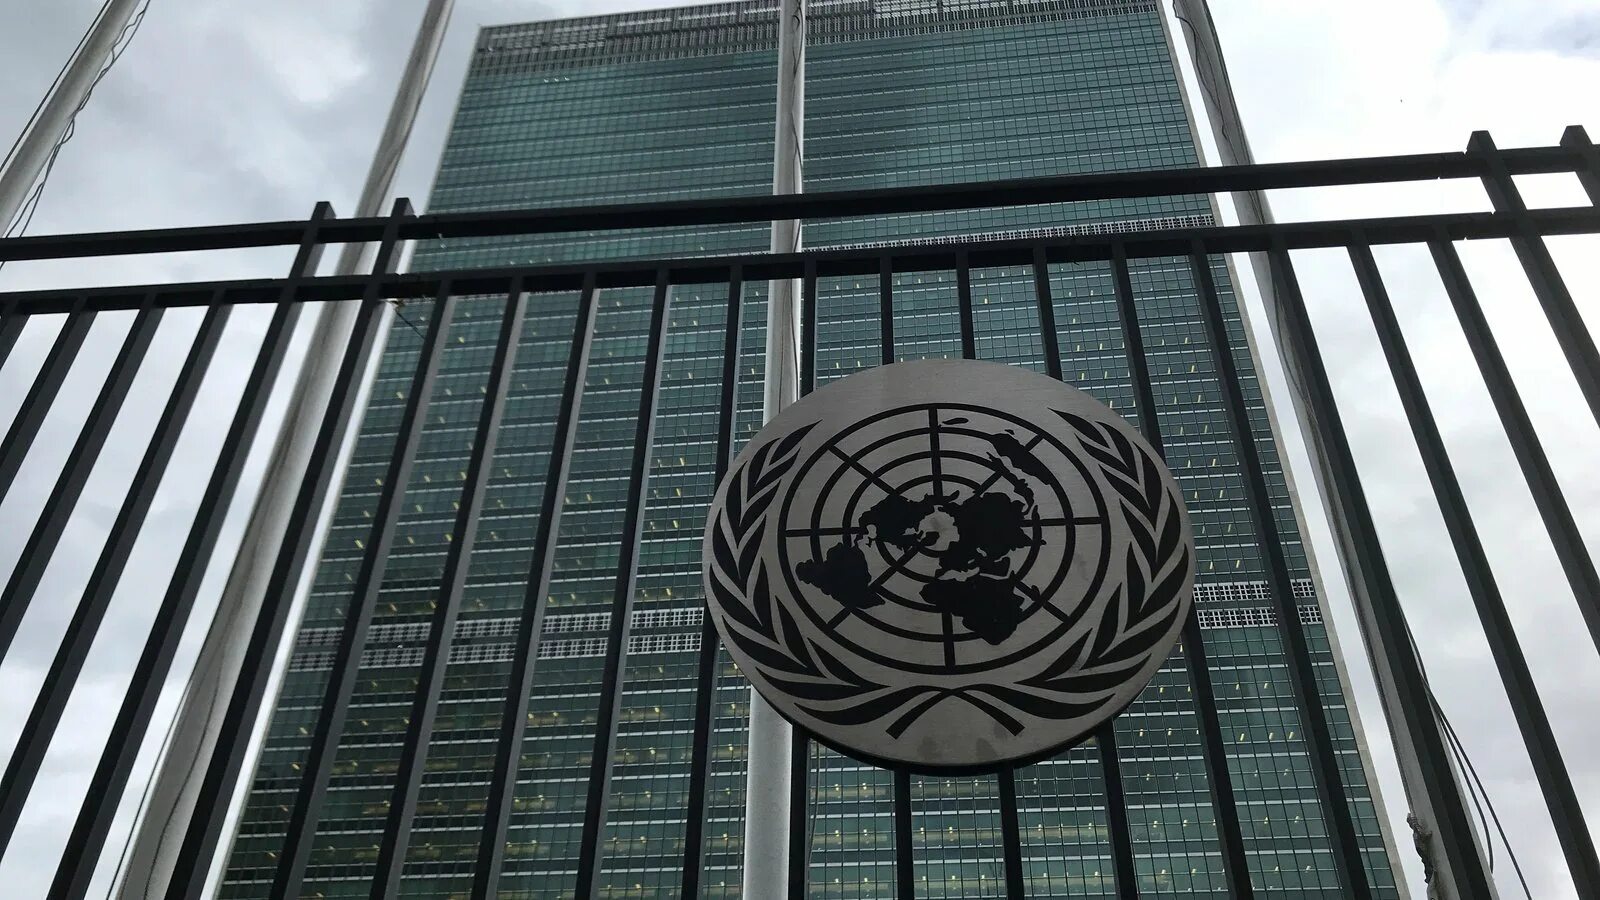 Генеральная Ассамблея ООН Нью-Йорк. Здание Генеральной Ассамблеи ООН В Нью-Йорке. Генассамблея ООН здание. Зал ООН В Нью-Йорке. Офис оон